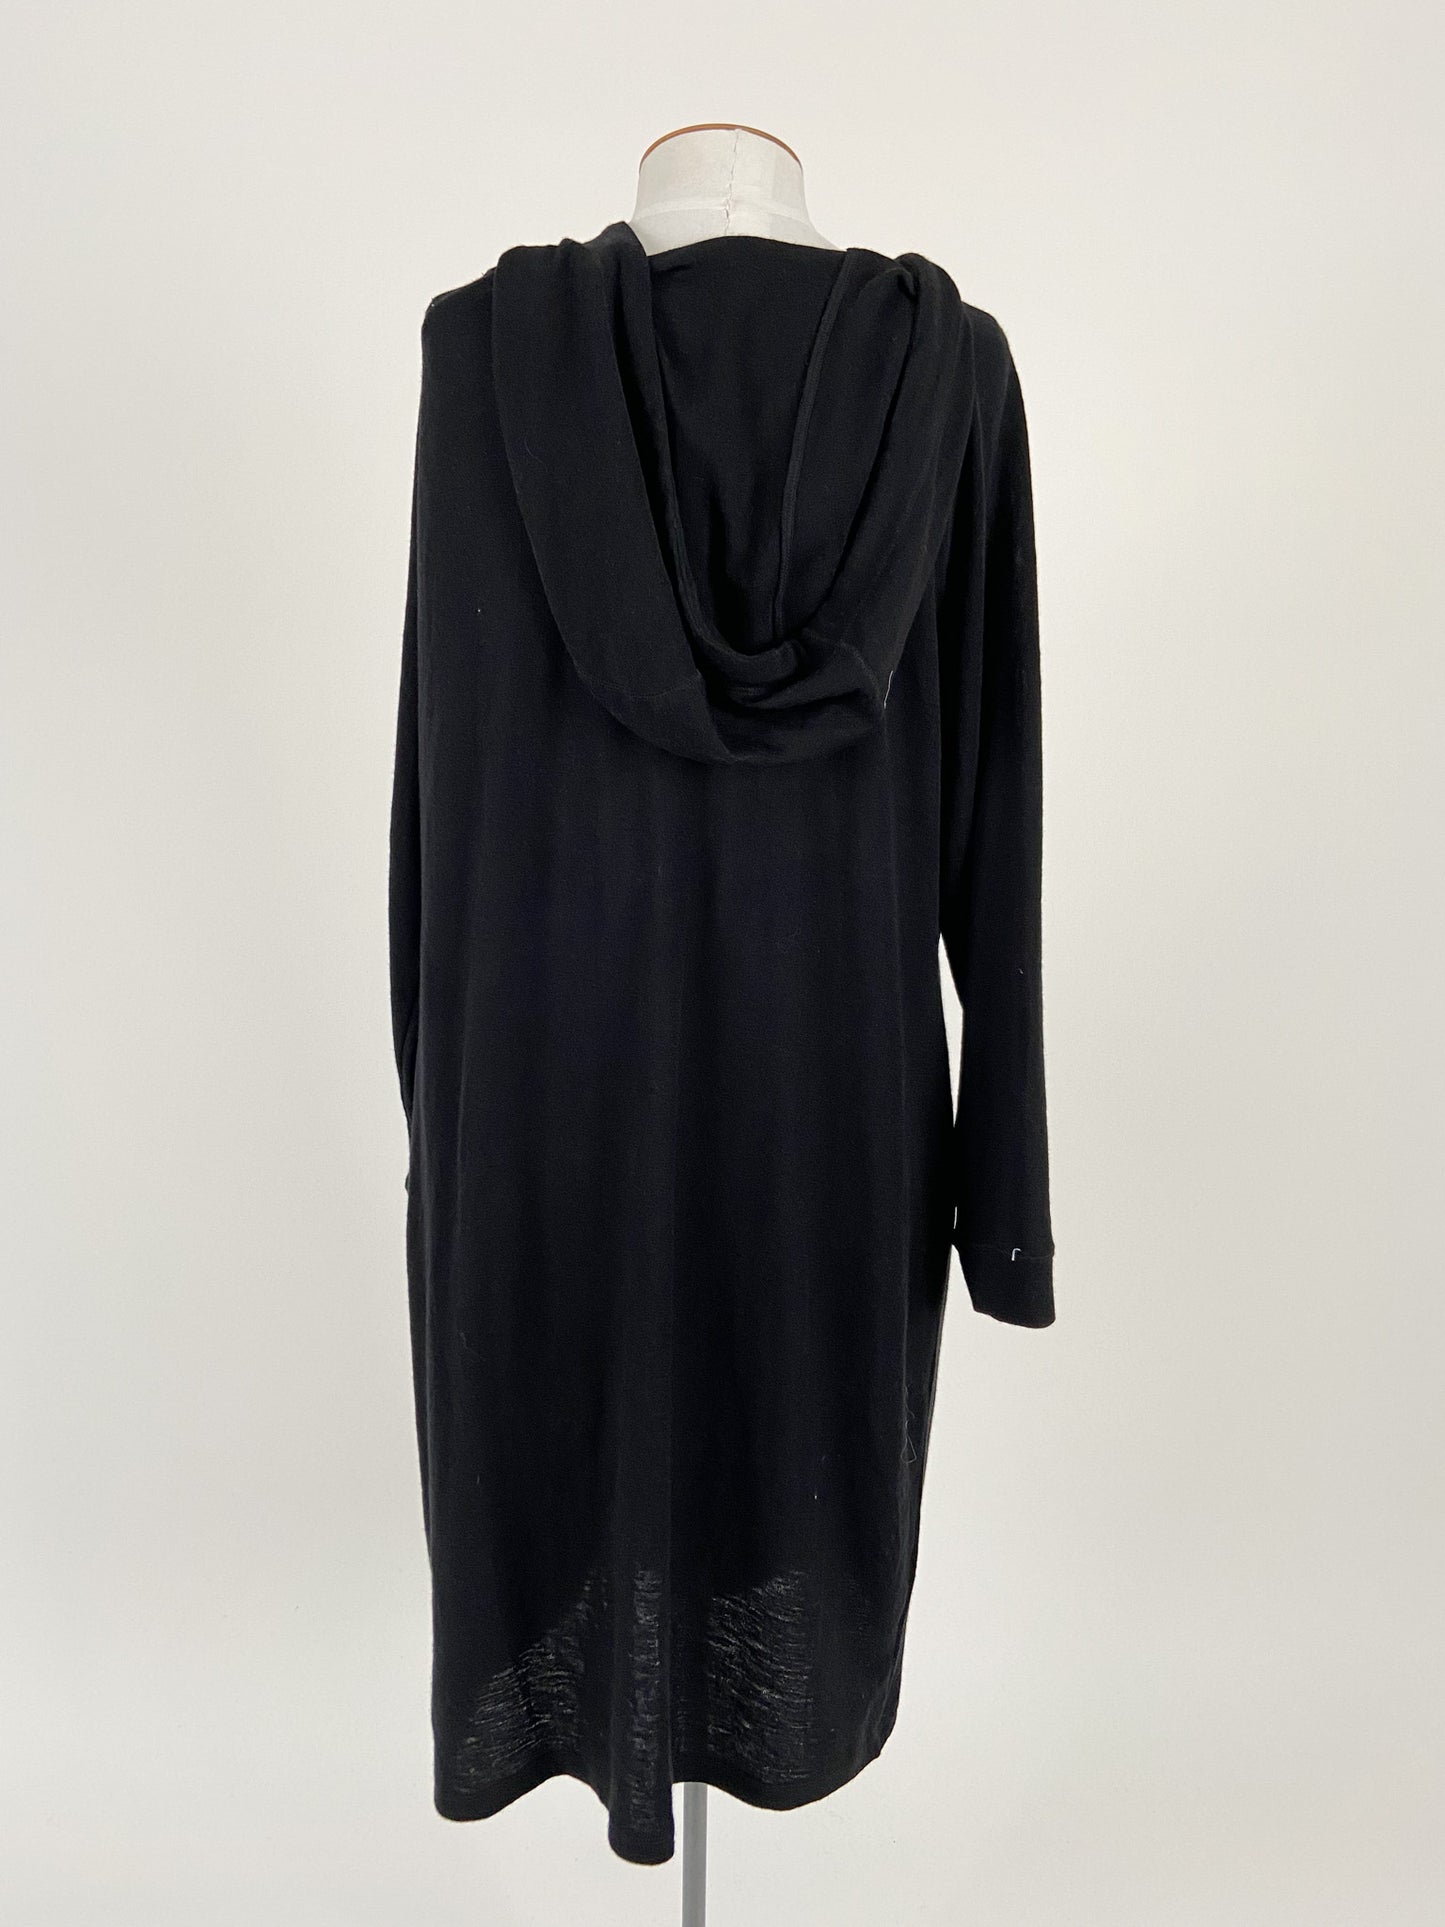 Capture | Black Casual Dress | Size XL